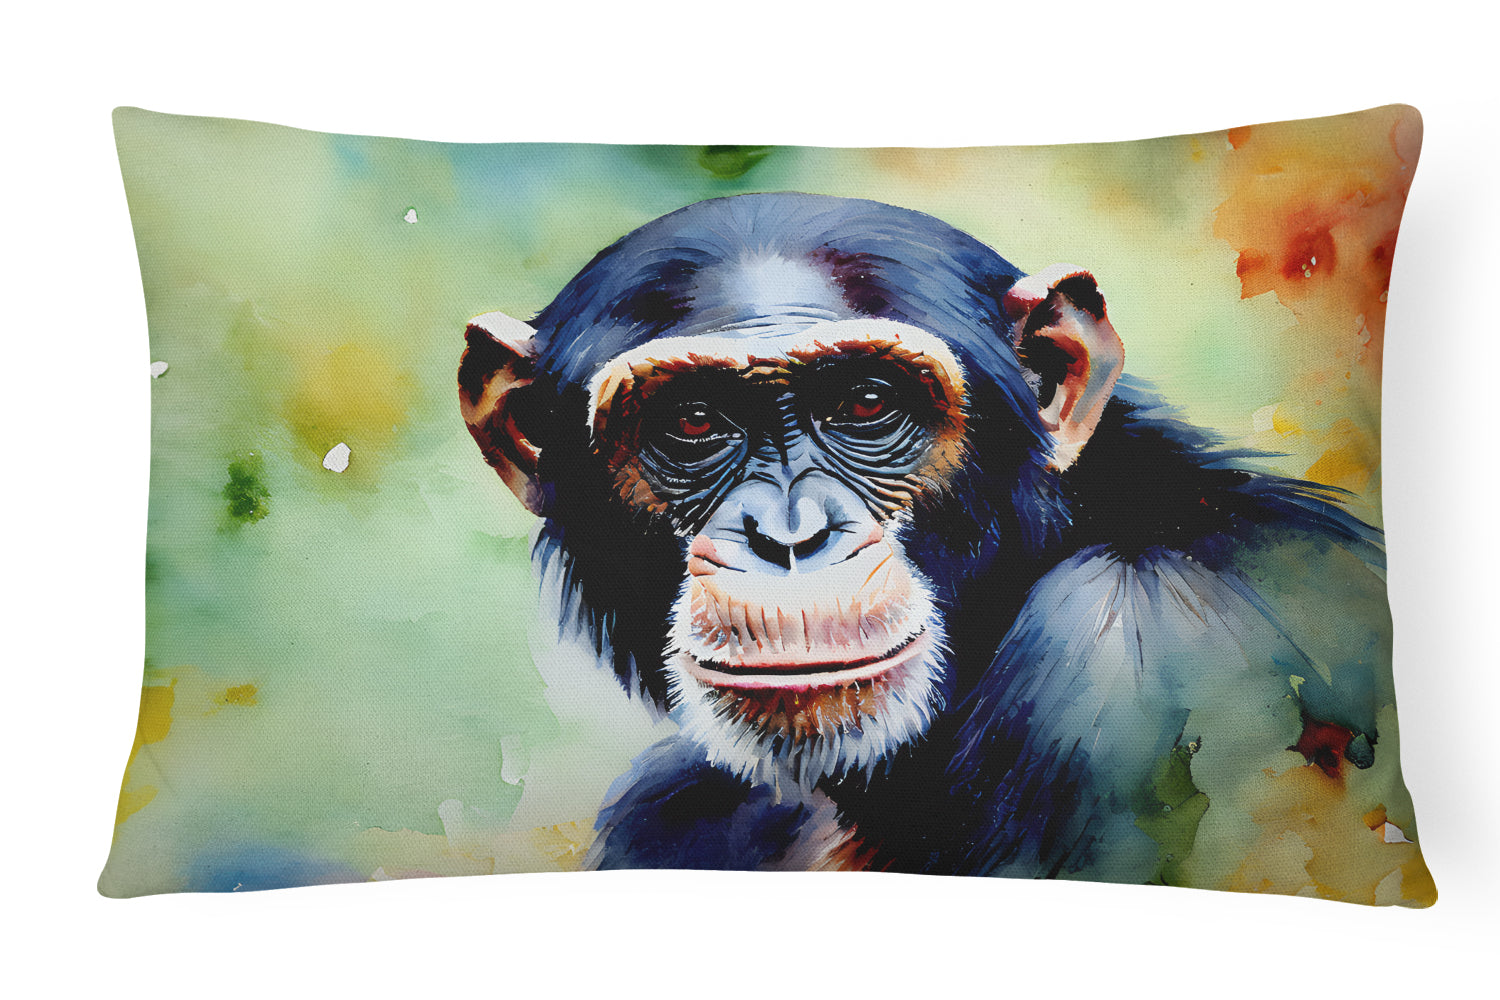 Buy this Chimpanzee Throw Pillow